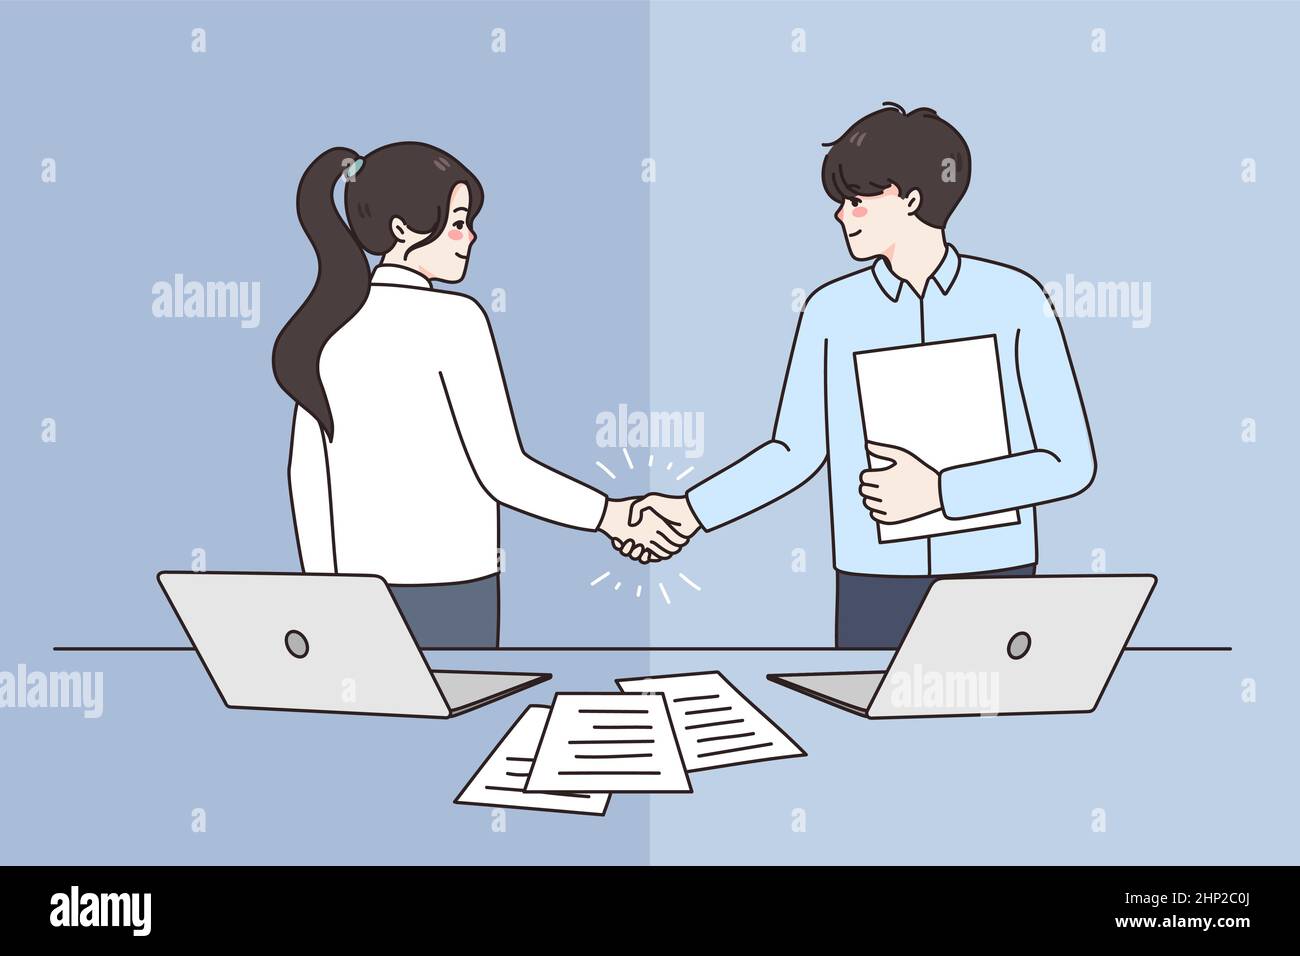 Les partenaires d'affaires souriants traitent la conclusion de la transaction lors de la réunion Illustration de Vecteur